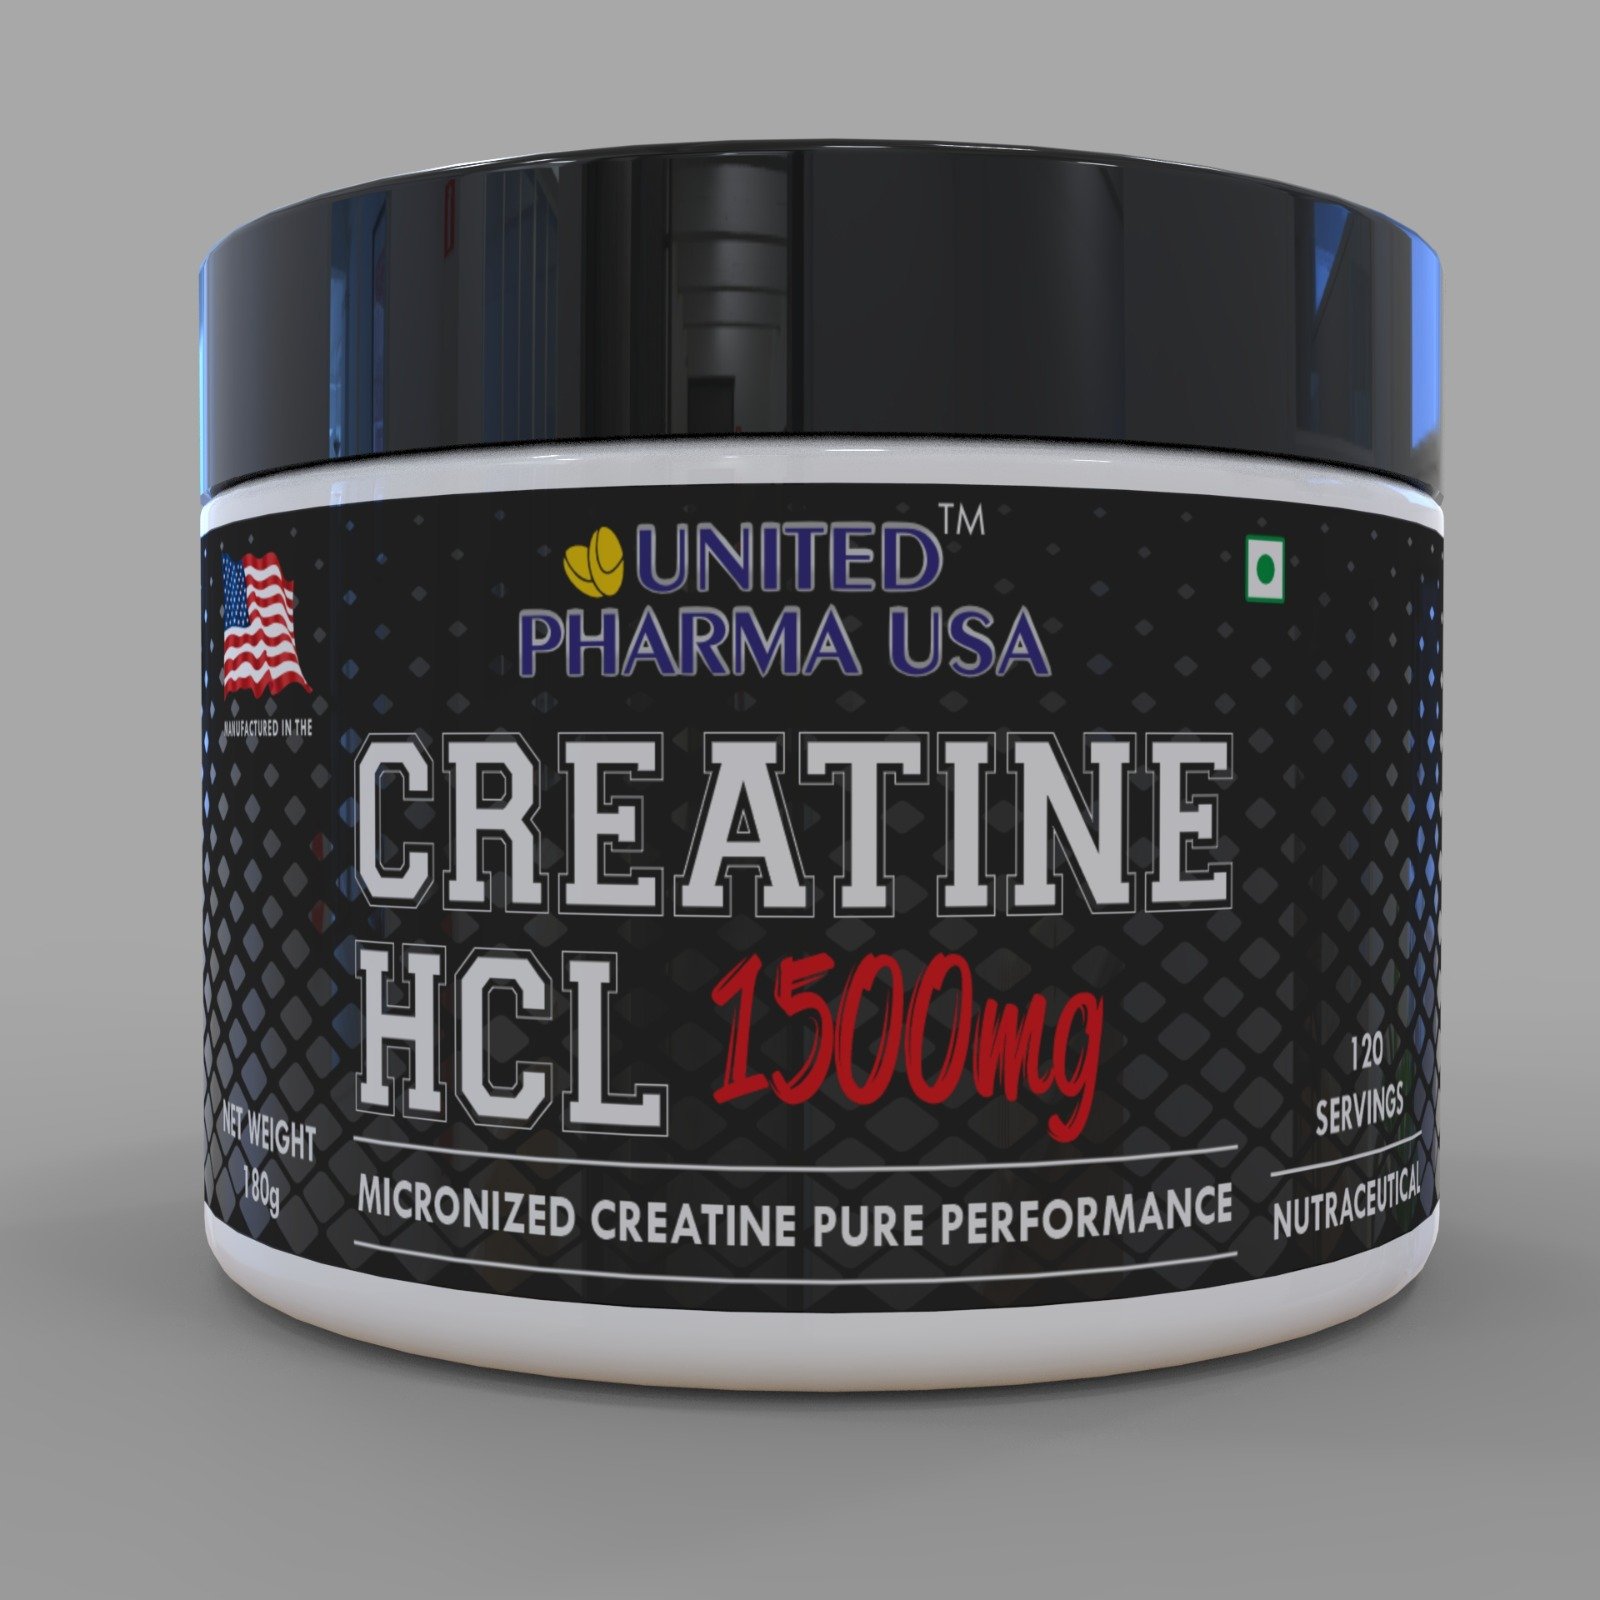 United Pharma USA – Creatine HCl 1500MG